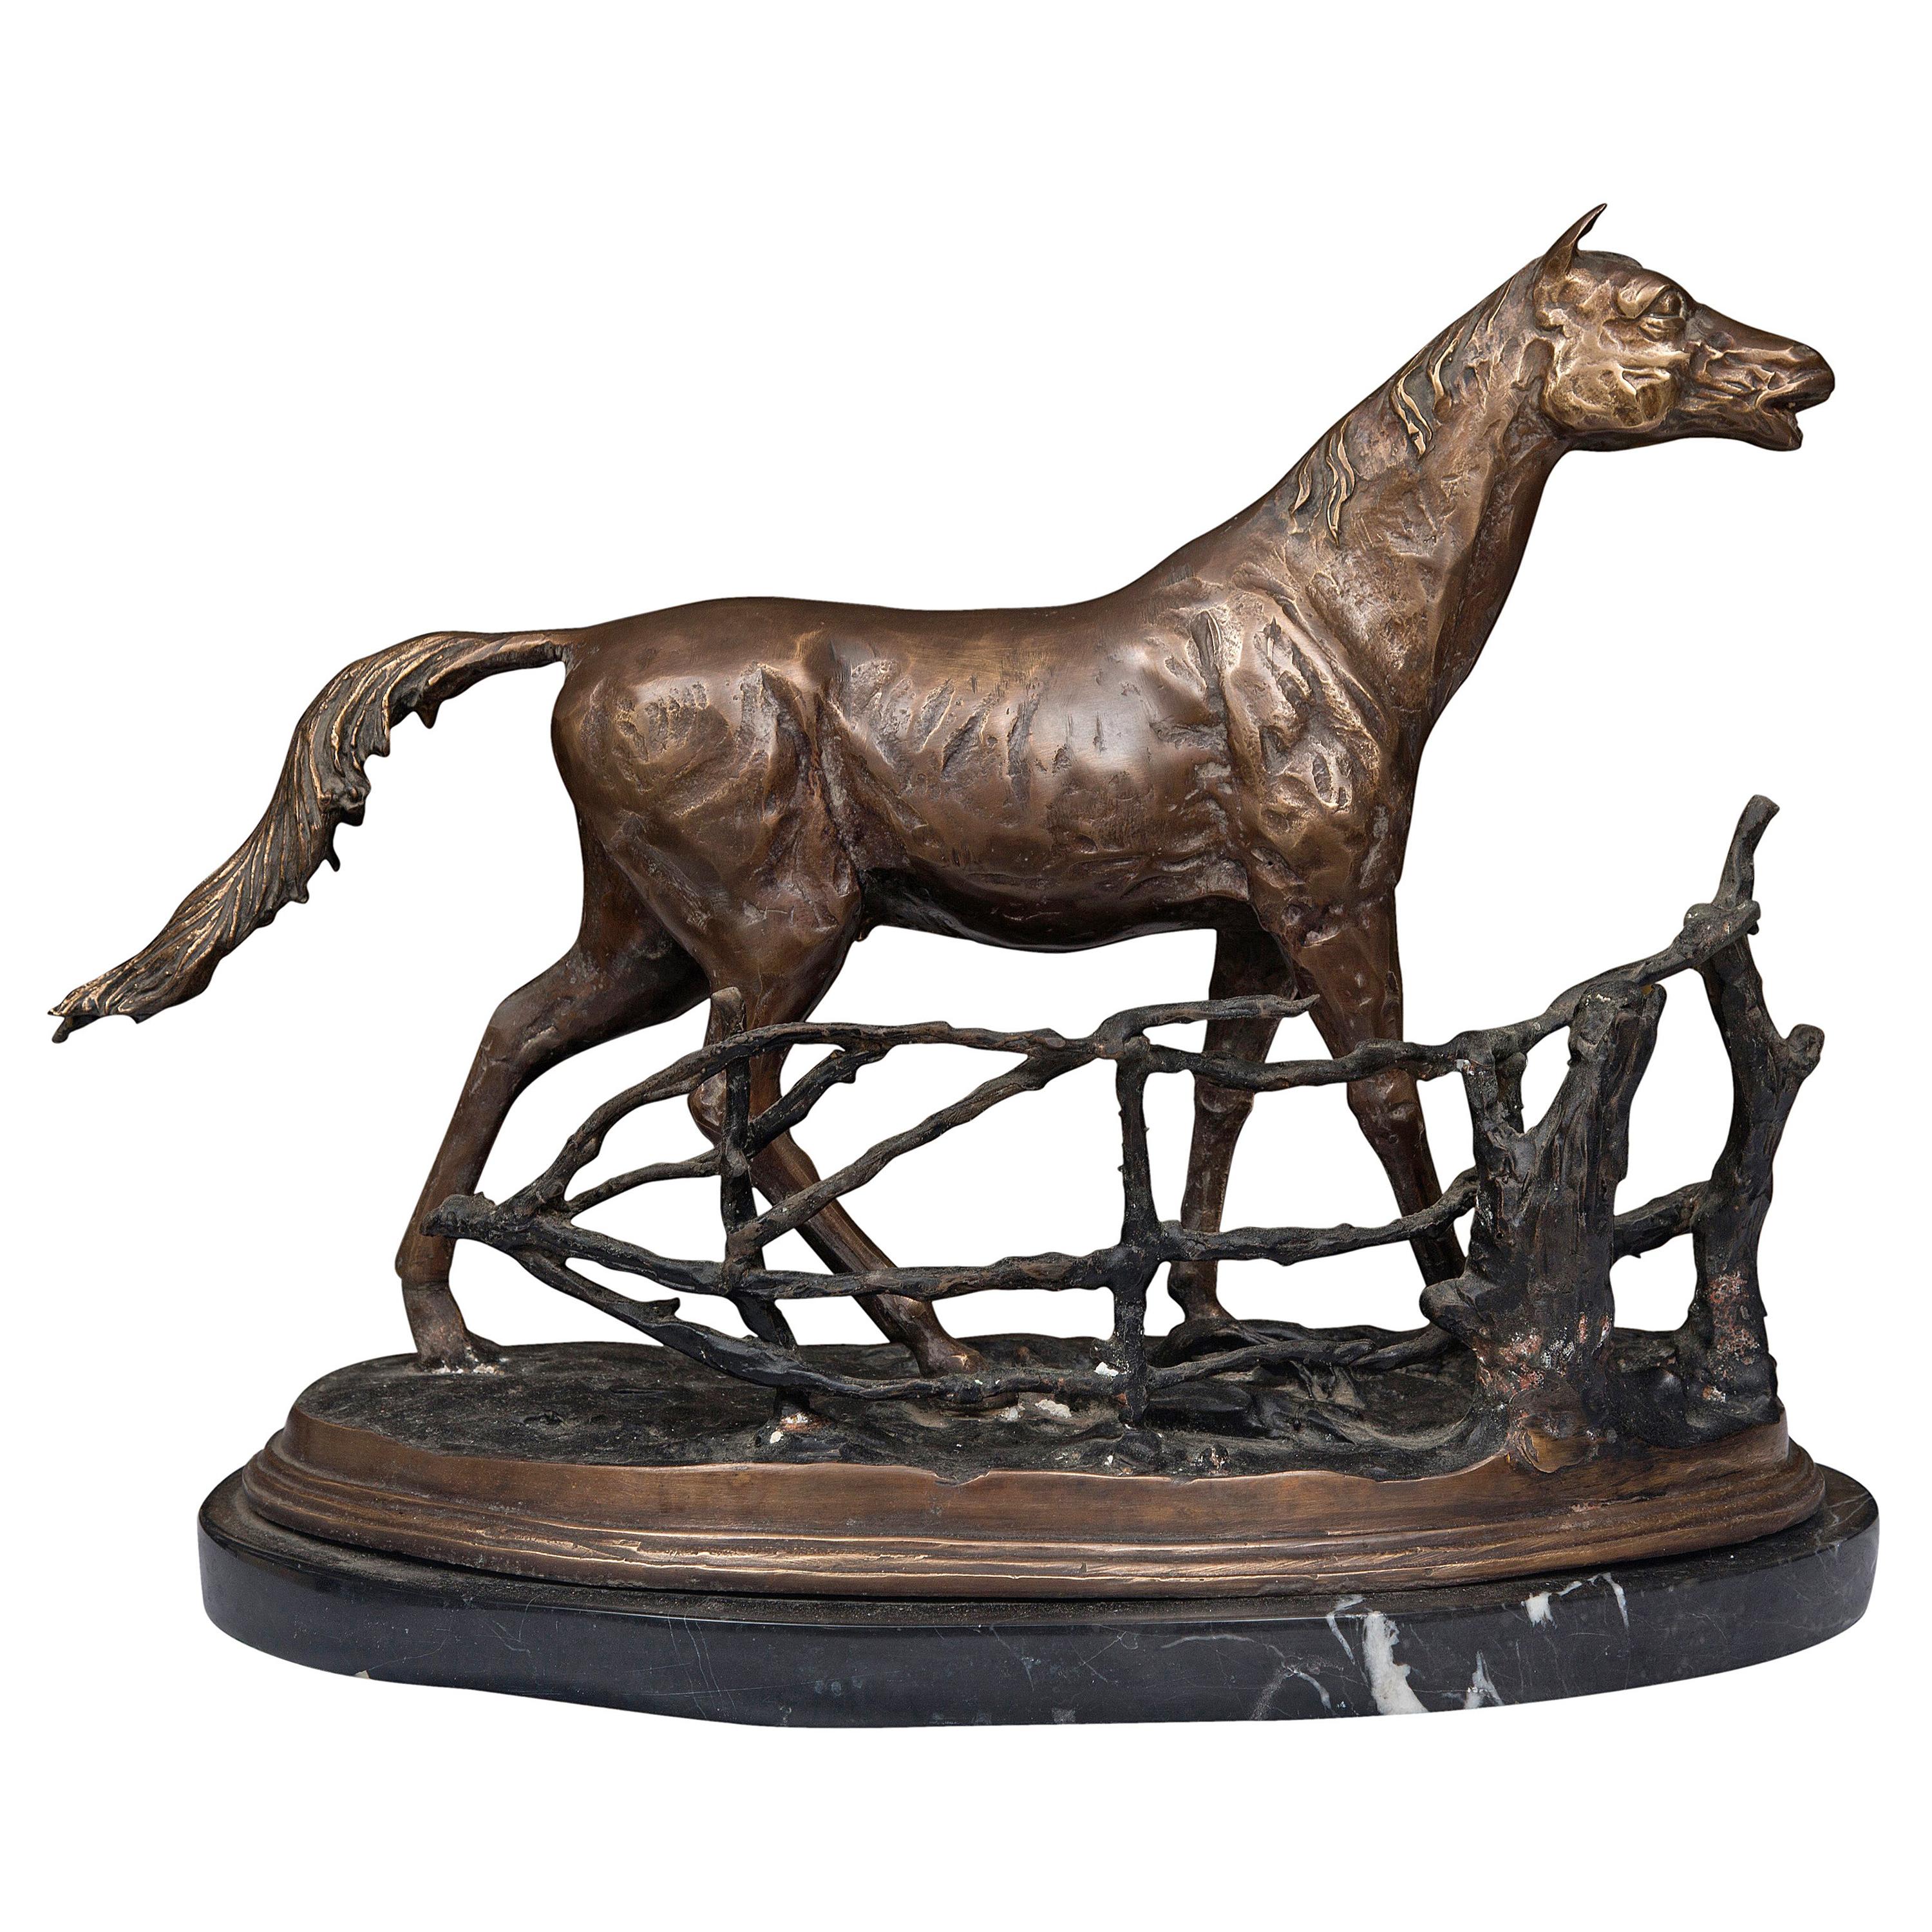 Statue eines Modells eines Pferdes aus patinierter Bronze auf Marmorsockel